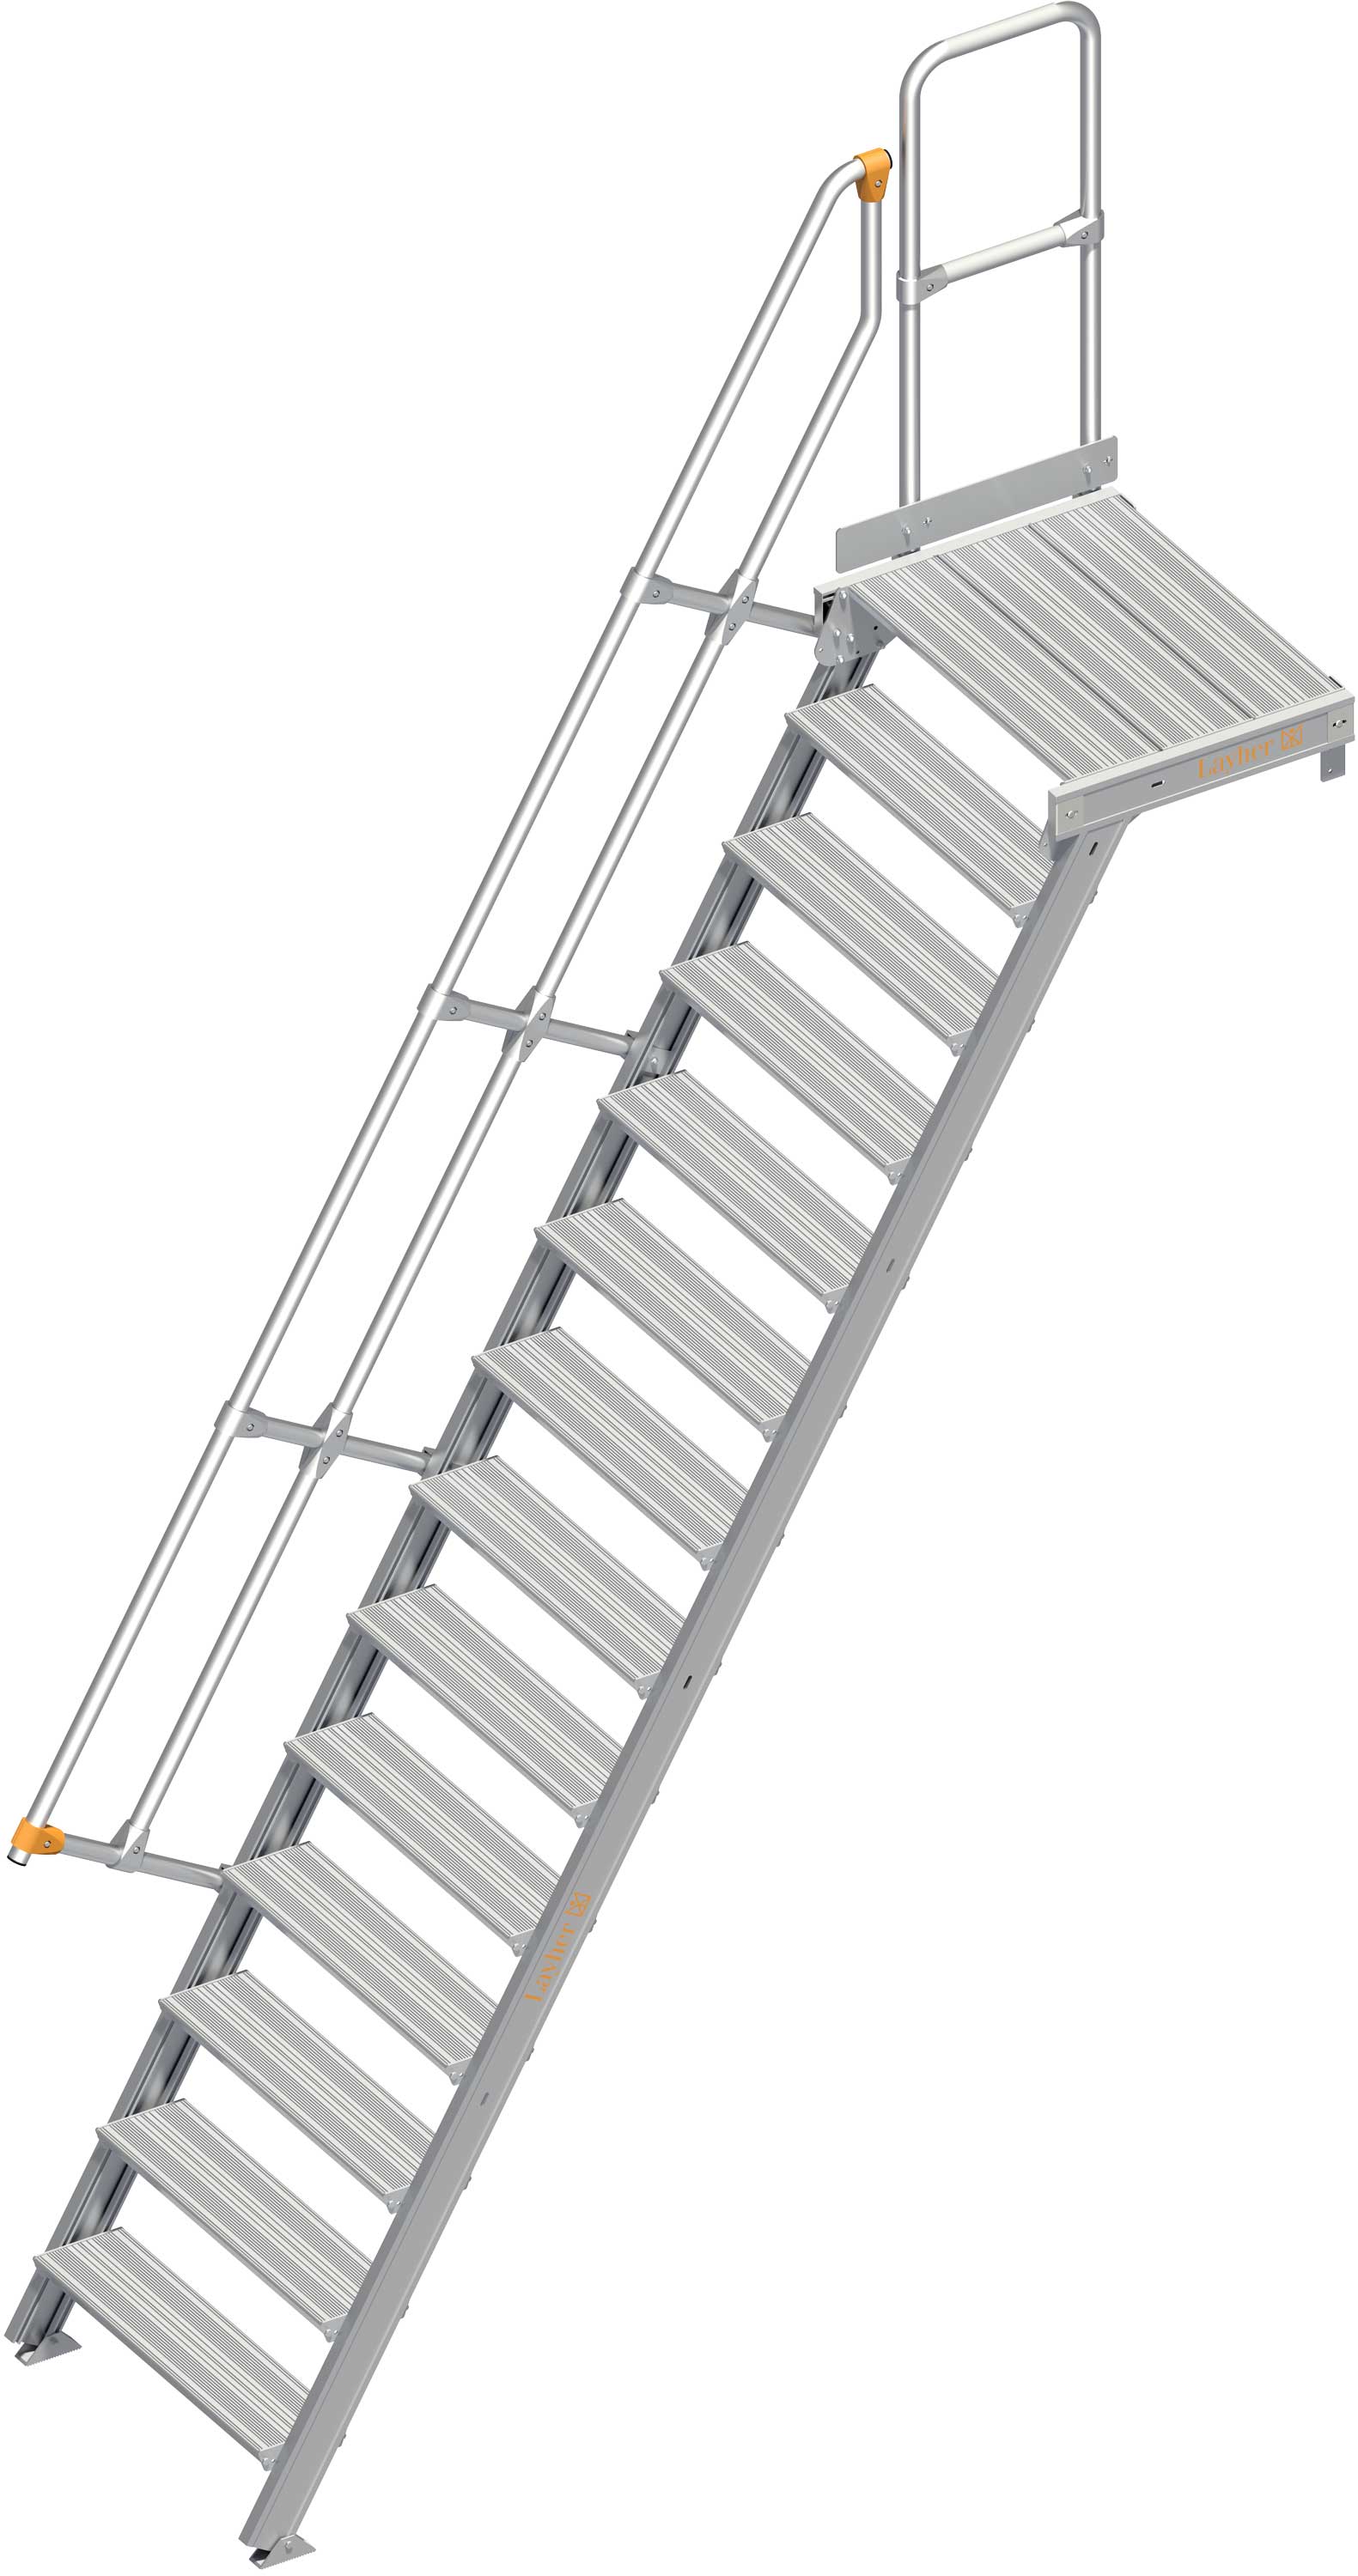 Layher Plattformtreppe 60° 14 Stufen - 800 mm breit